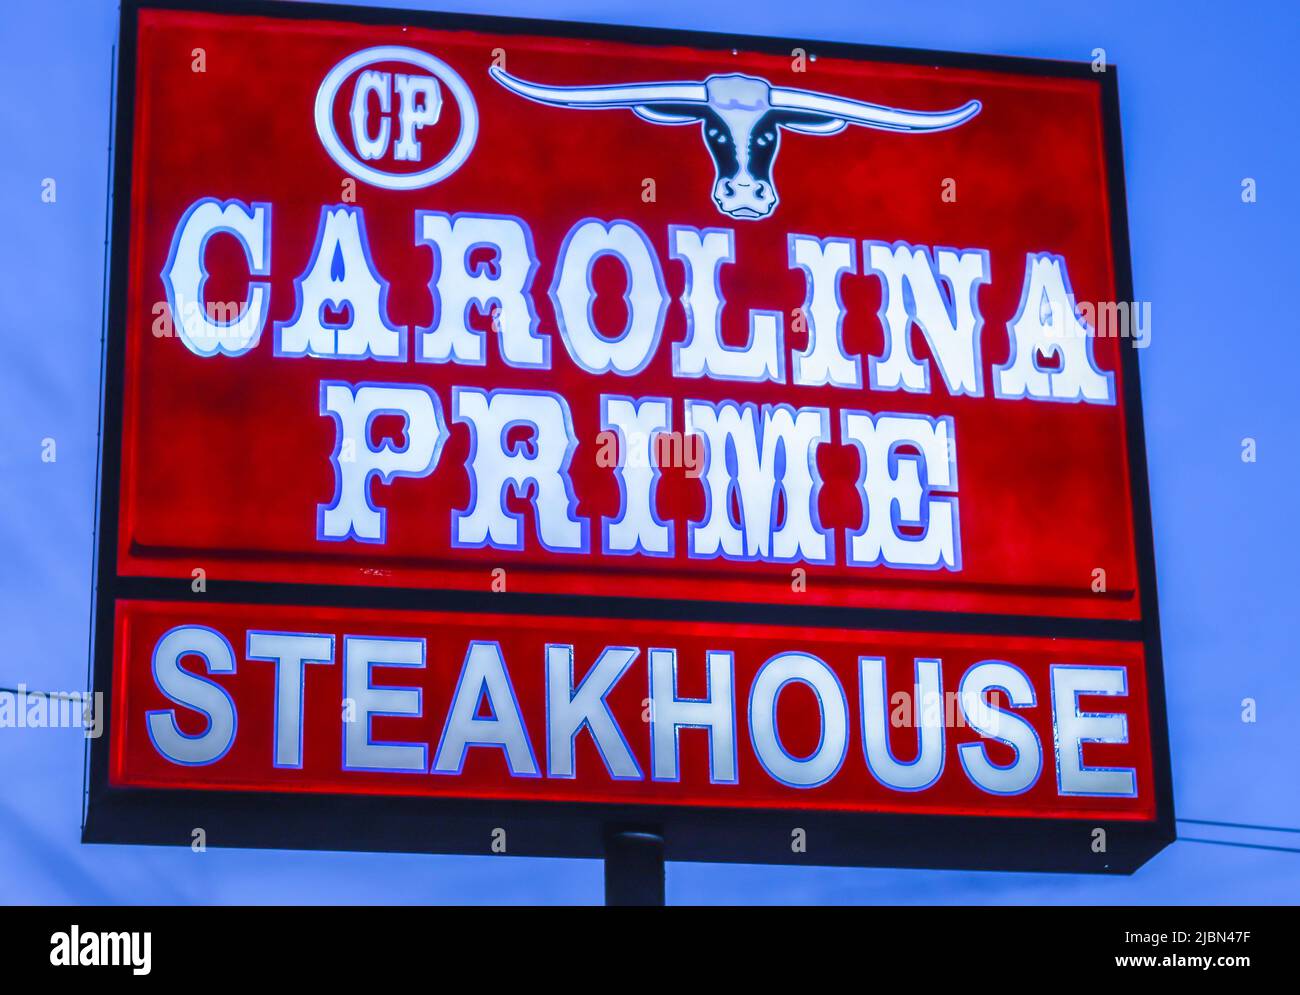 Carolina Prime Steakhouse extérieur, publicité de rue libre éclairée en lettres blanches sur fond rouge contre un ciel bleu. Banque D'Images